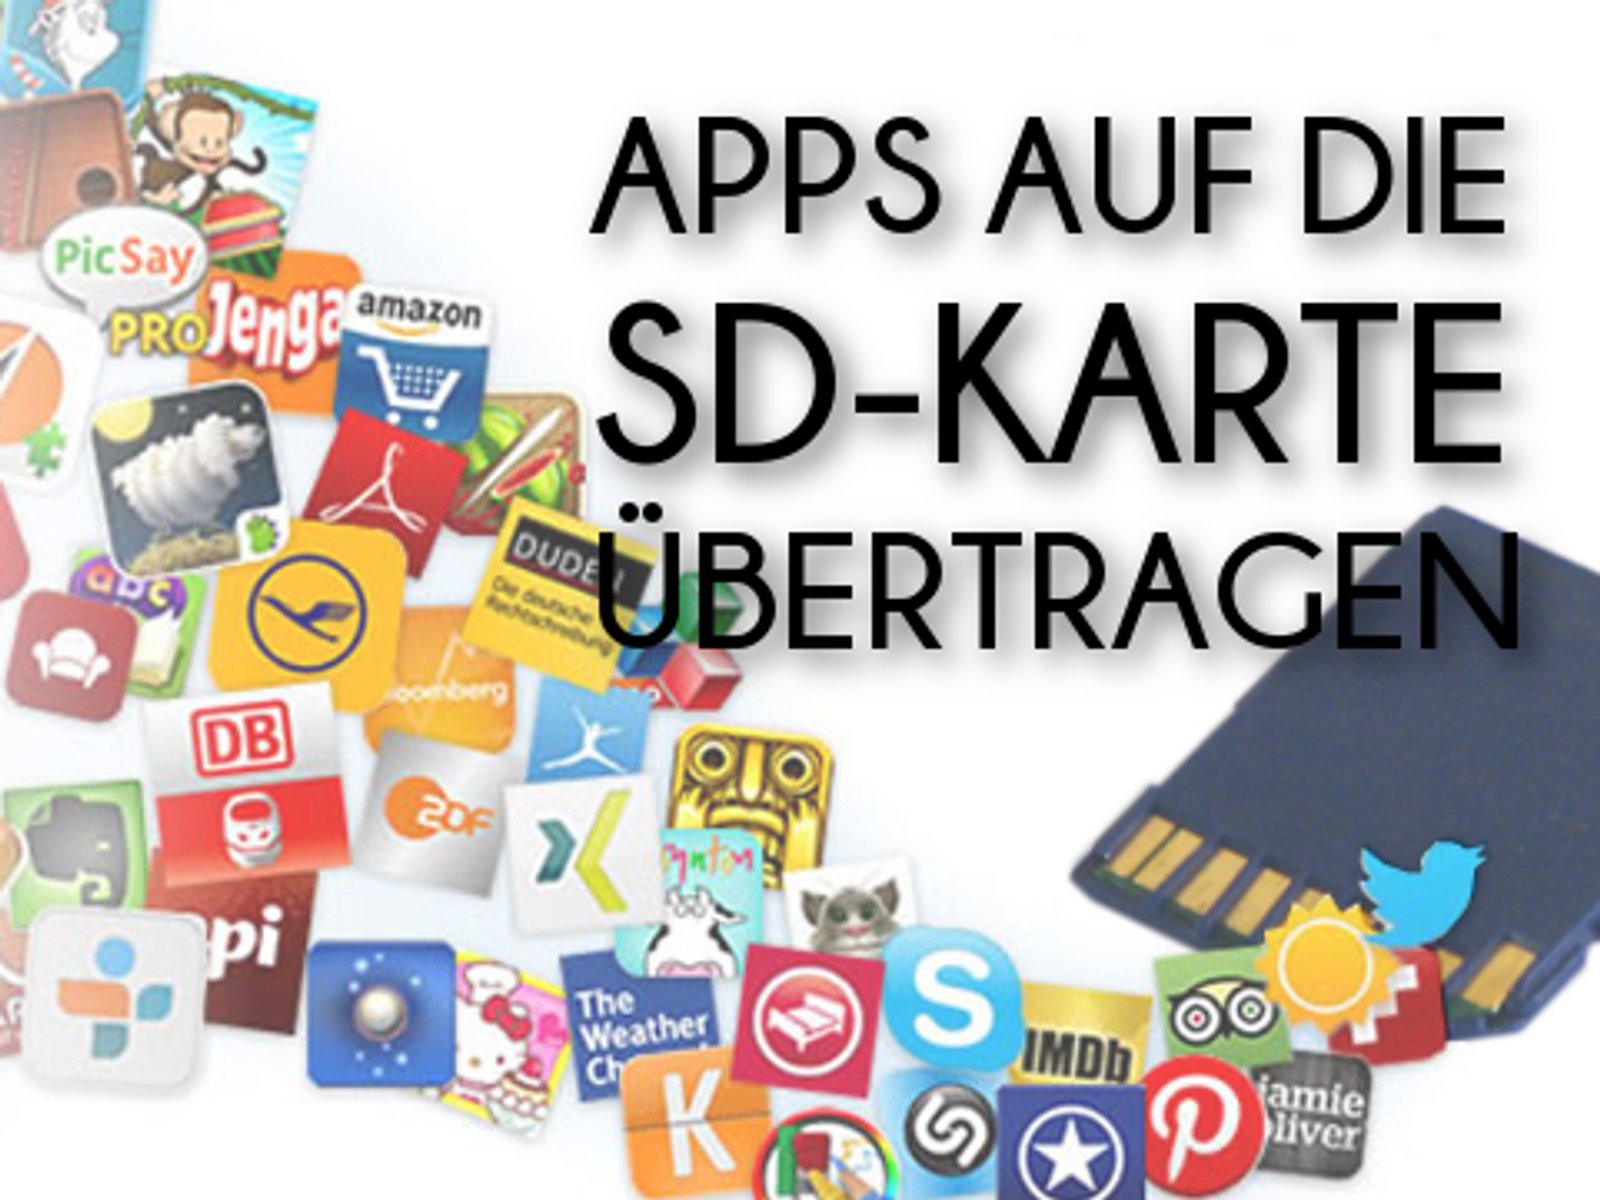 Abnormaal Bemiddelaar Tablet Apps auf SD-Karte verschieben und SD-Karte zum internen Speicher machen